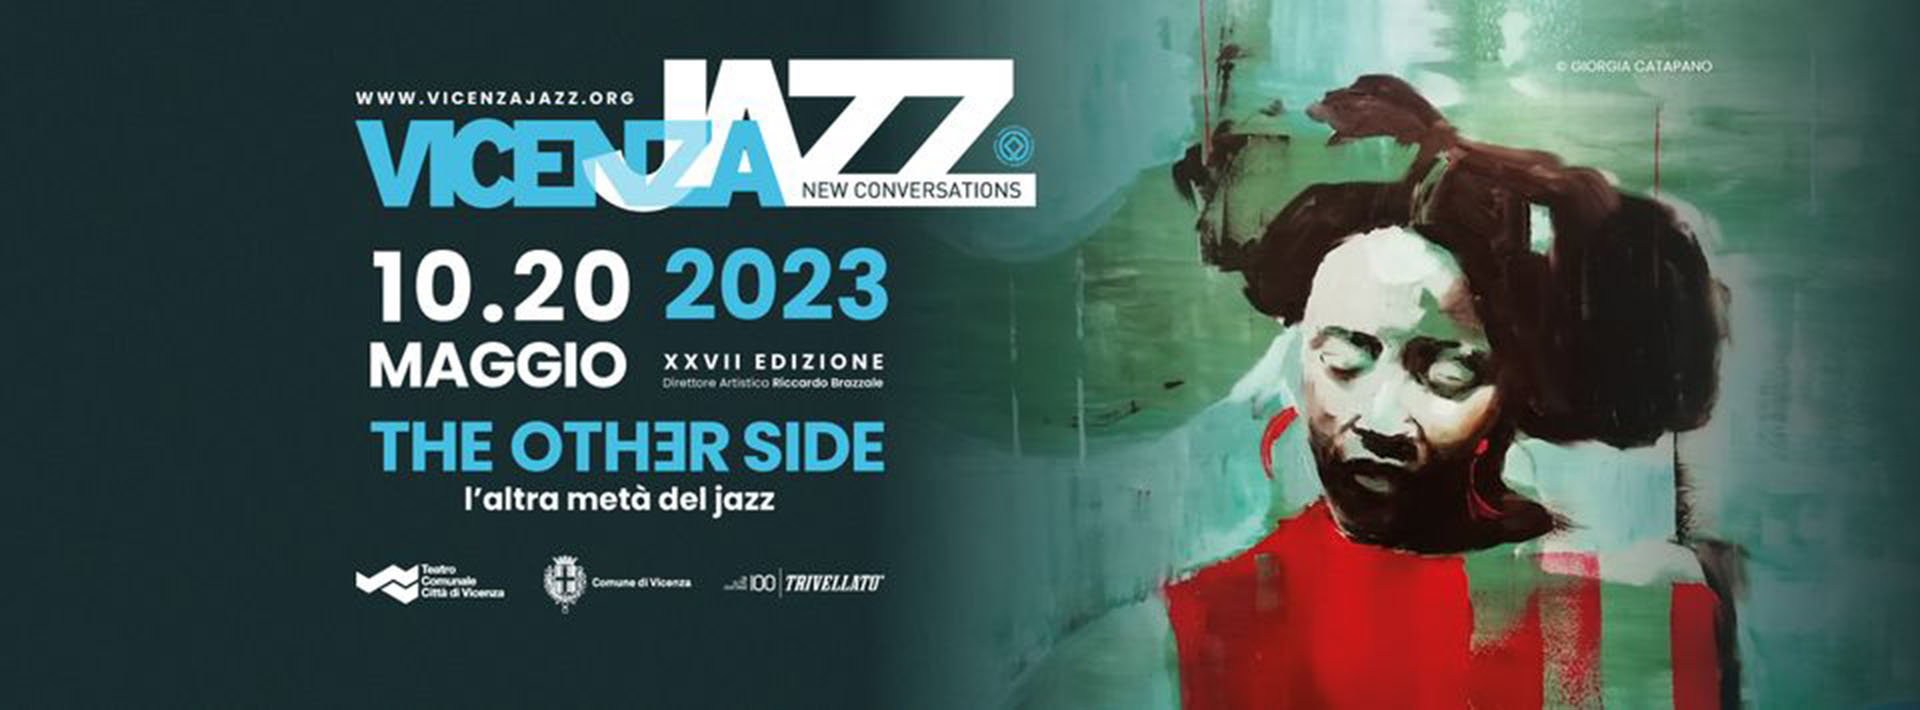 Vicenza jazz: 10/20 Maggio 2023 - XXVII edizione